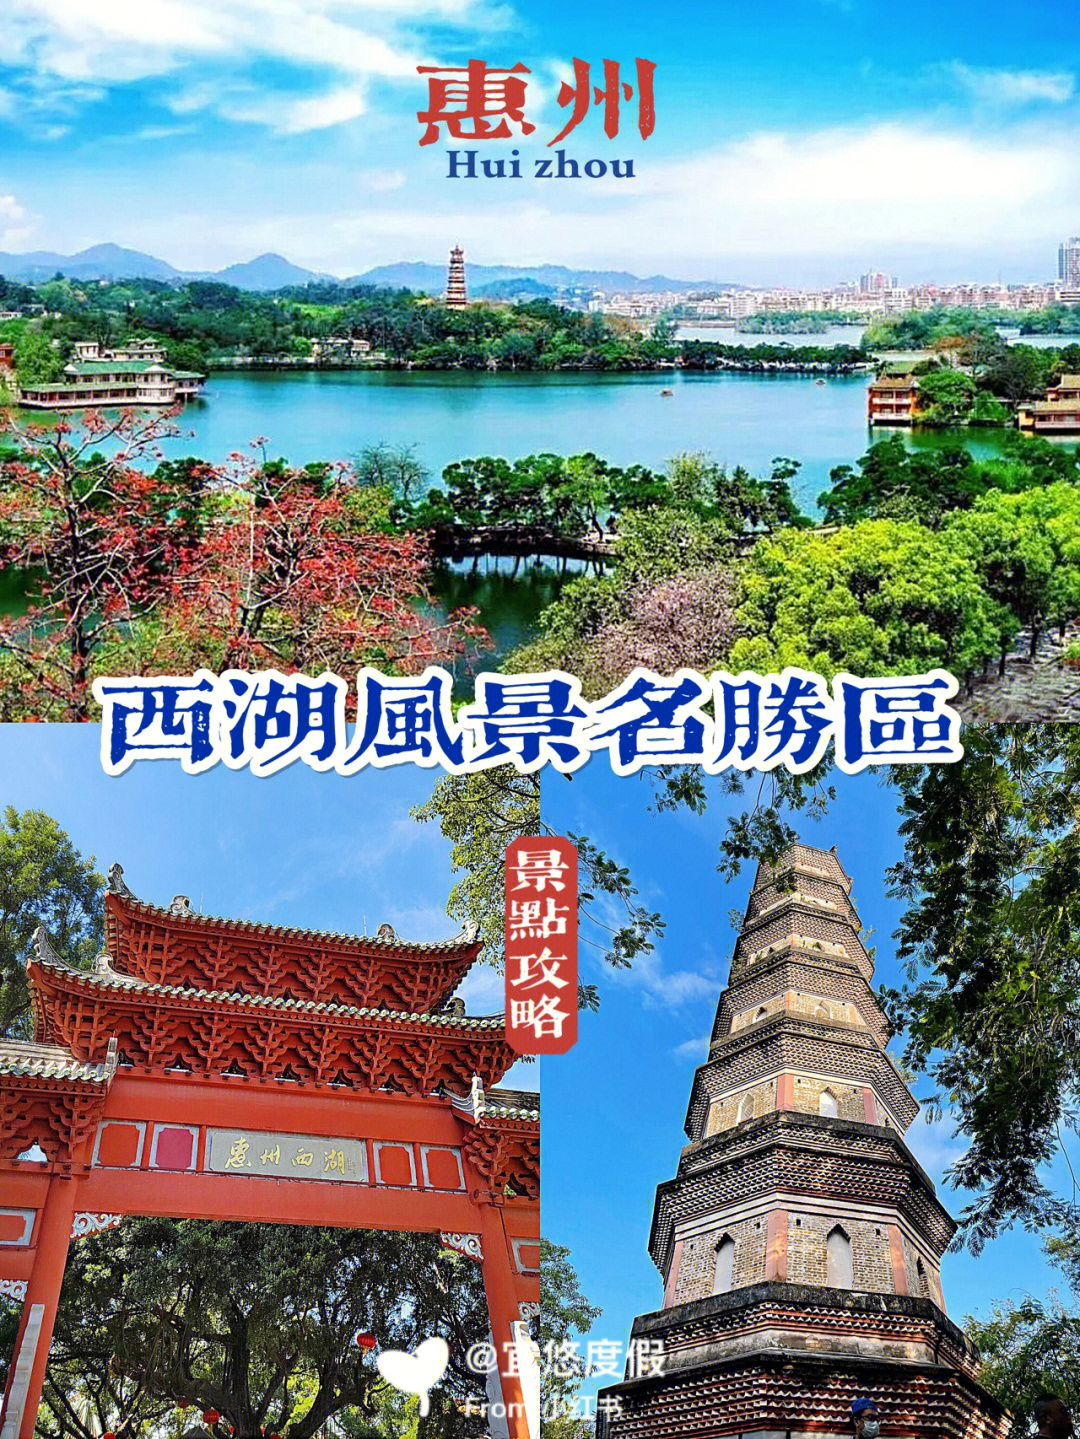 惠州景区旅游景点介绍图片